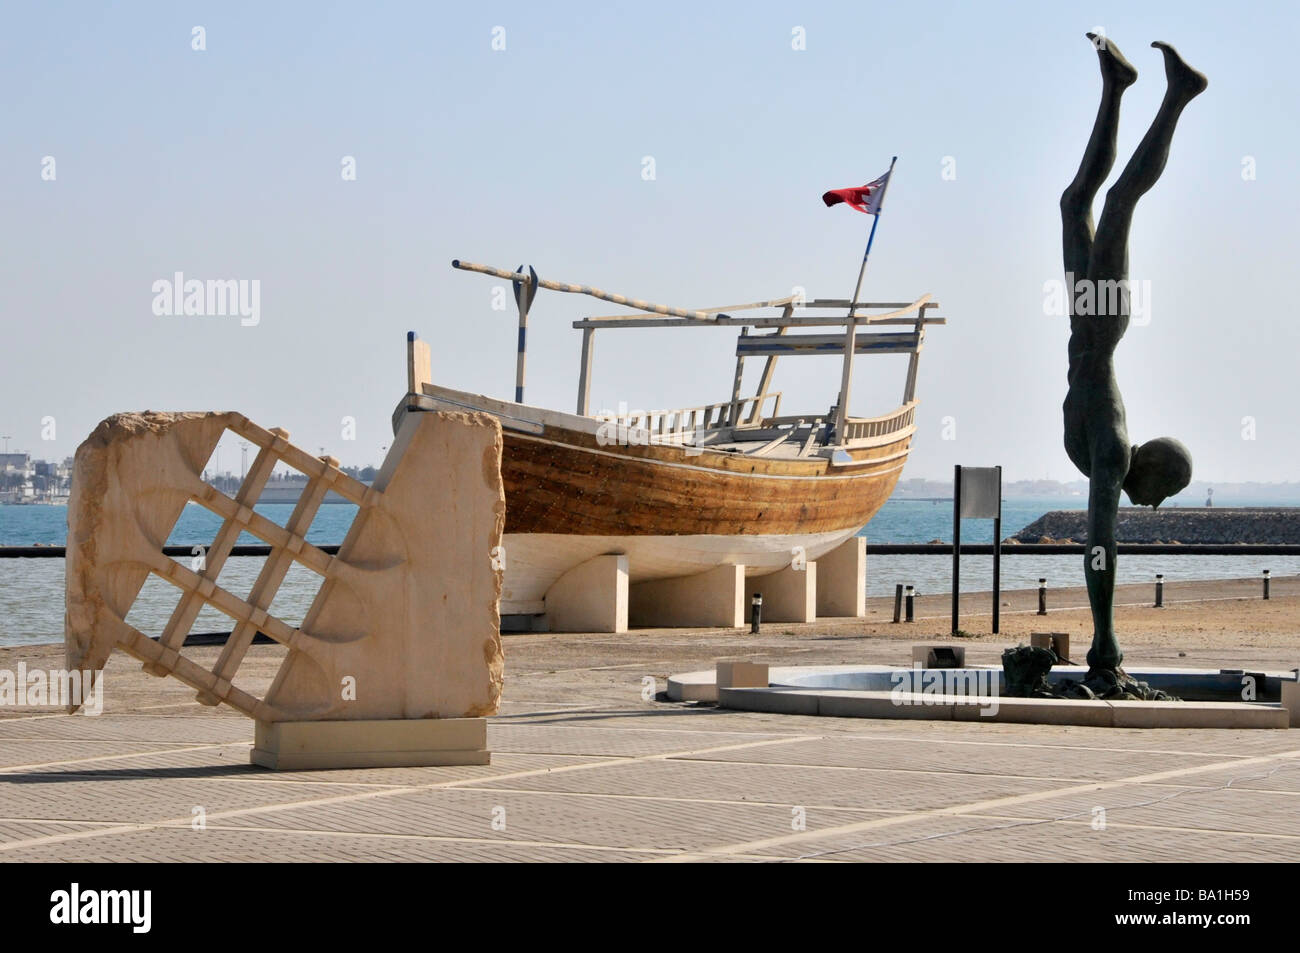 Bahrain National Museum, mostre storiche all'aperto sul mare, tra cui un sammaro Barca e Perla Diver scultura Manama Golfo Persico Medio Oriente Foto Stock